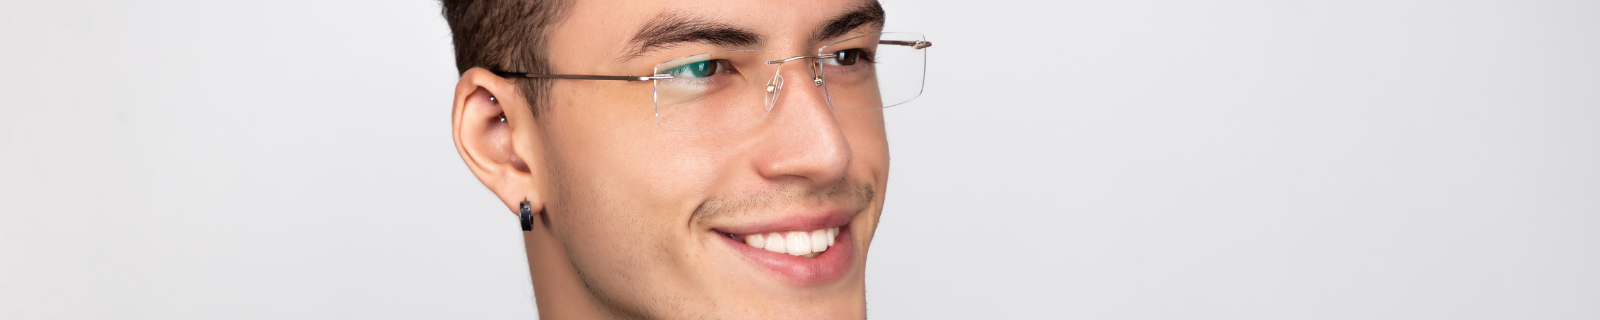 Youthful man wearing rimless glasses